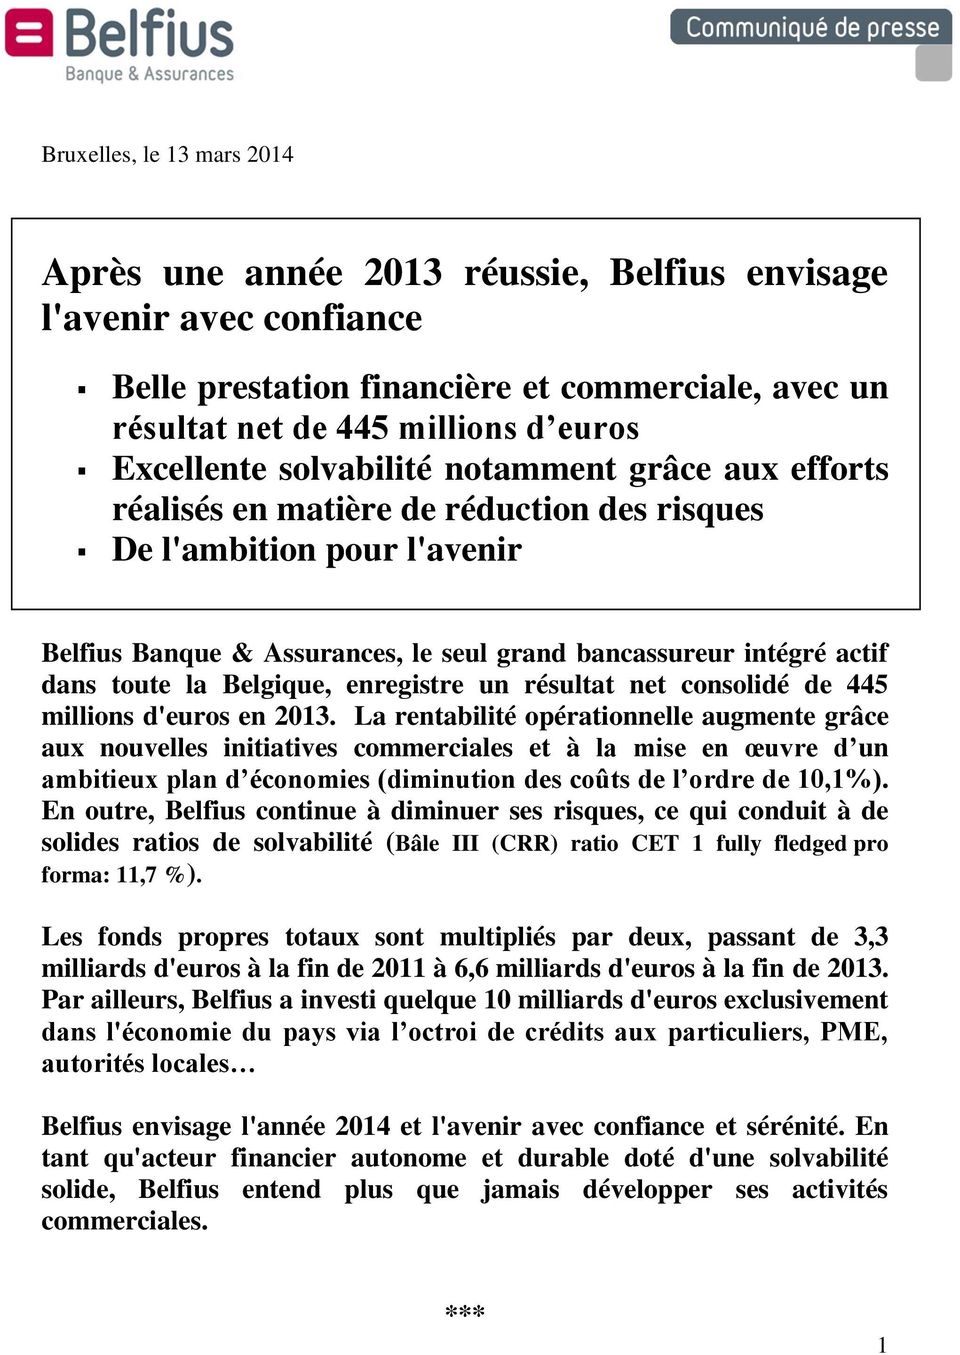 Belgique, enregistre un résultat net consolidé de 445 millions d'euros en 2013.